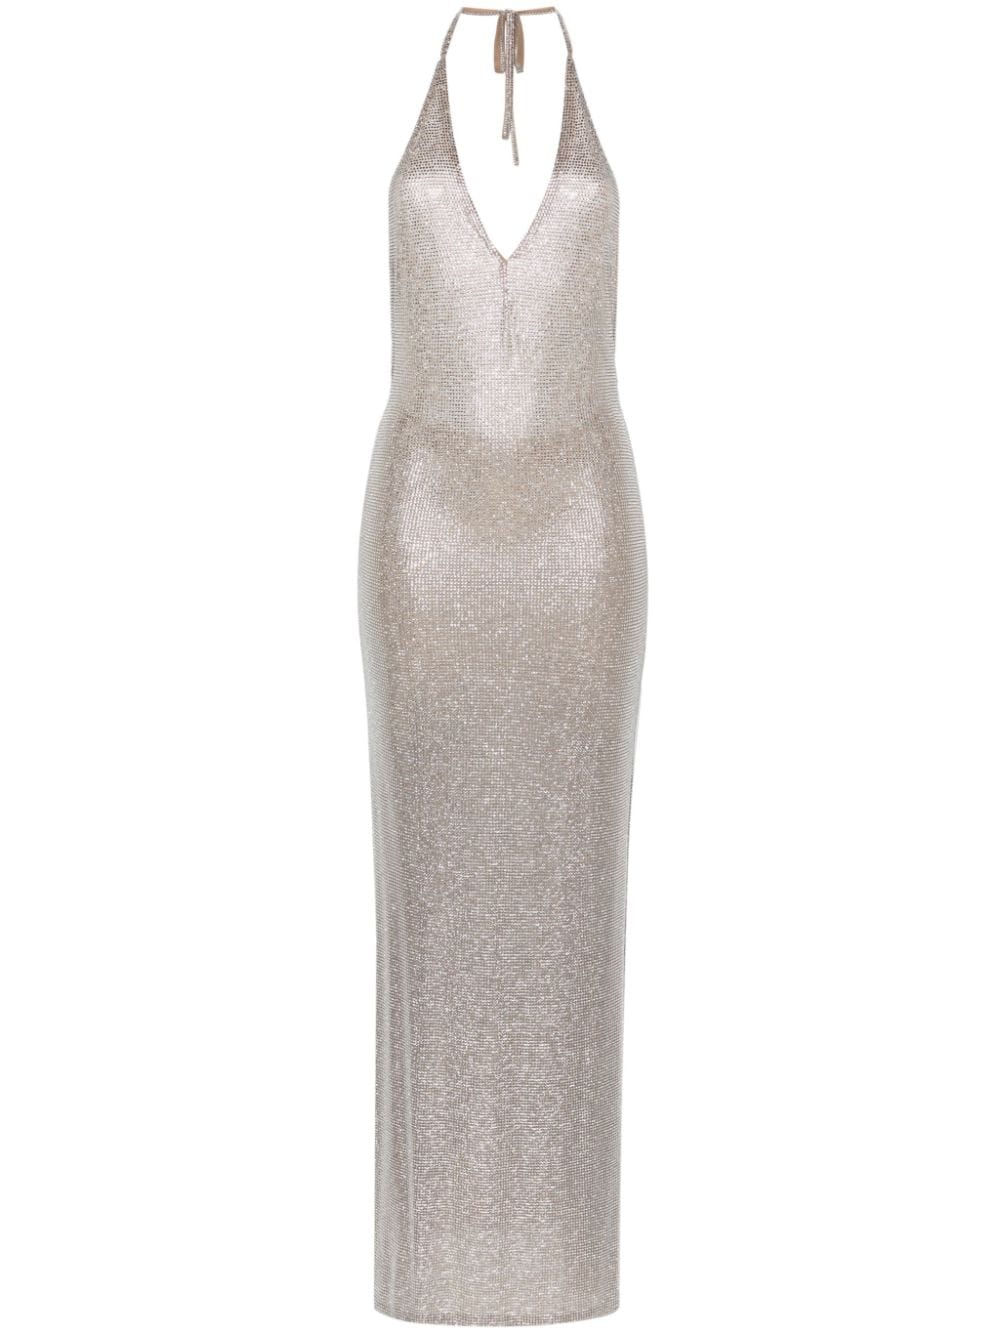 GIUSEPPE DI MORABITO Silver Mesh Halter Dress for Women - Elegant & Timeless Style